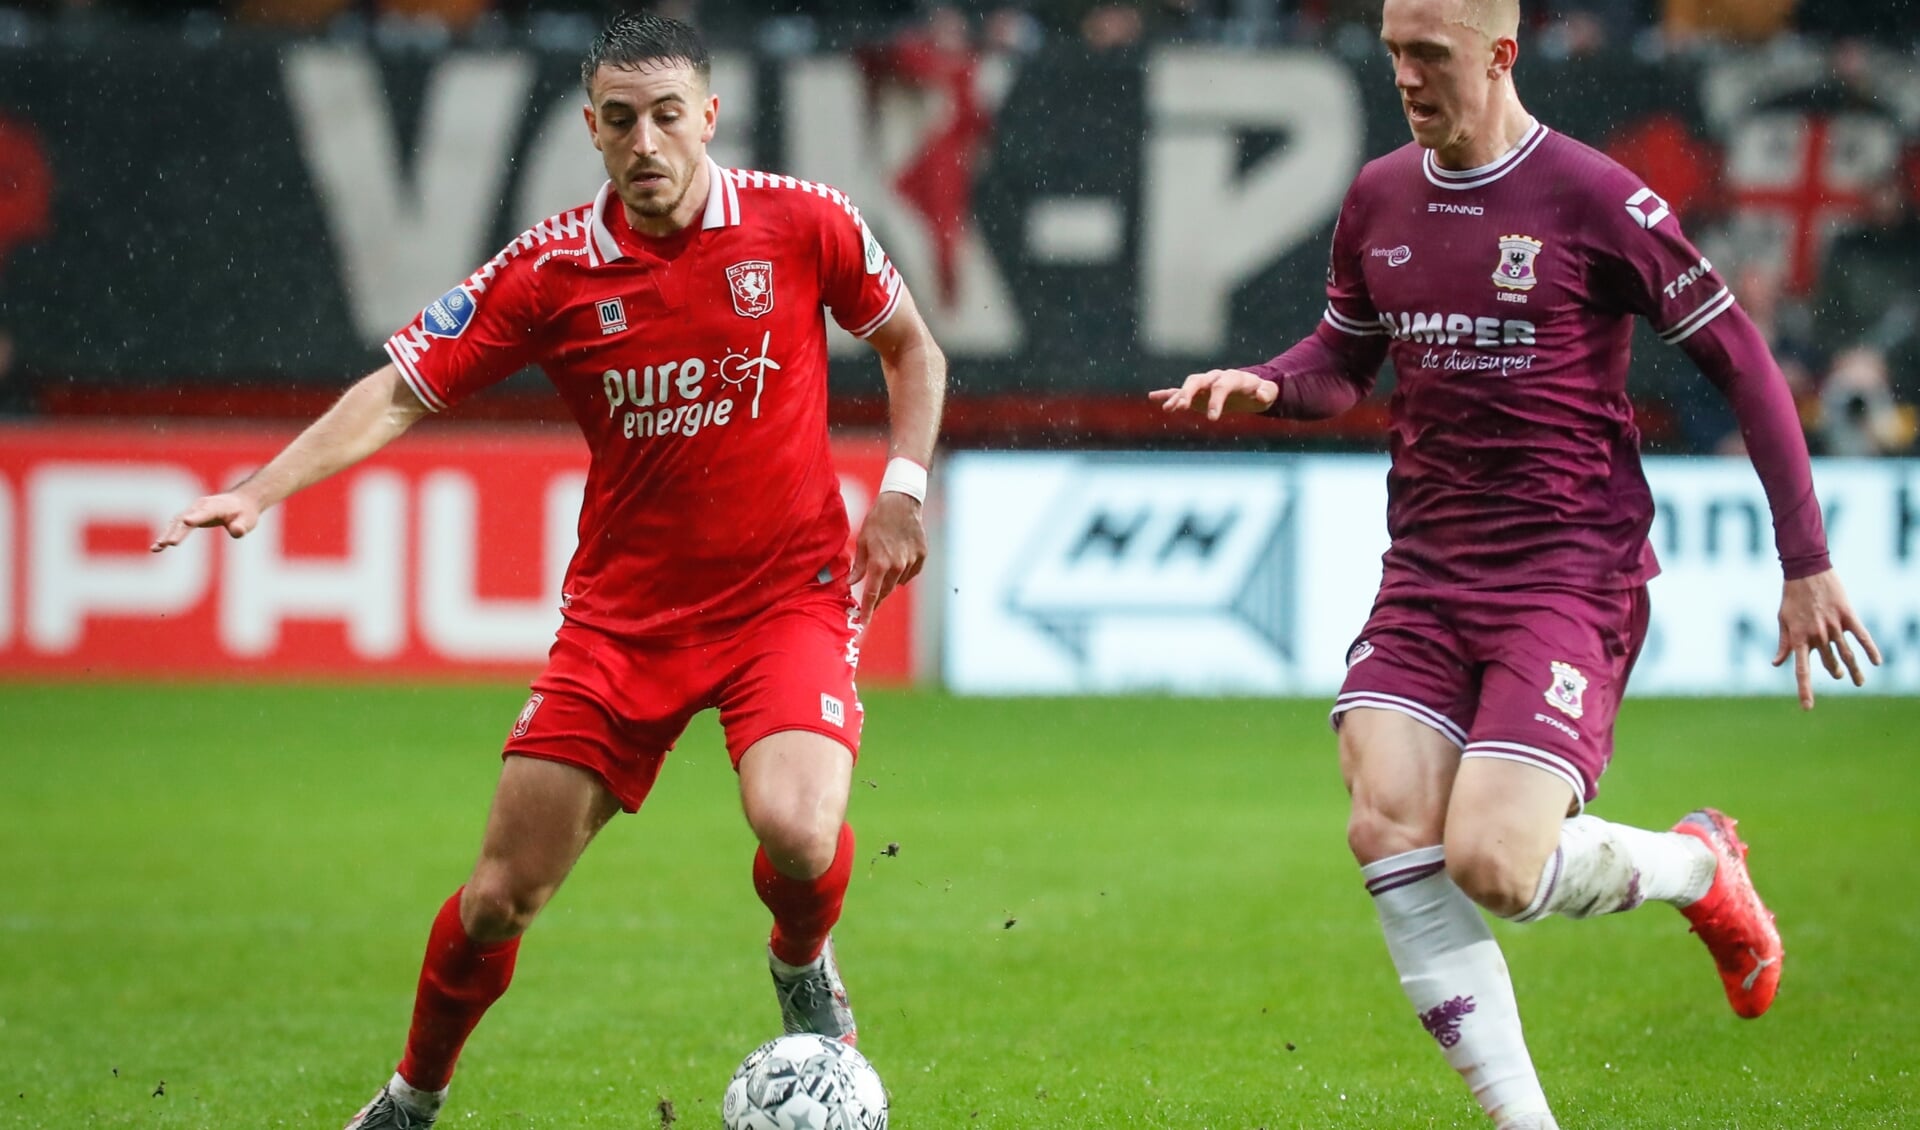 Julio Pleguezuelo in actie in de wedstrijd tegen Go Ahead. (Foto: FC Twente Media/Bas Everhard)